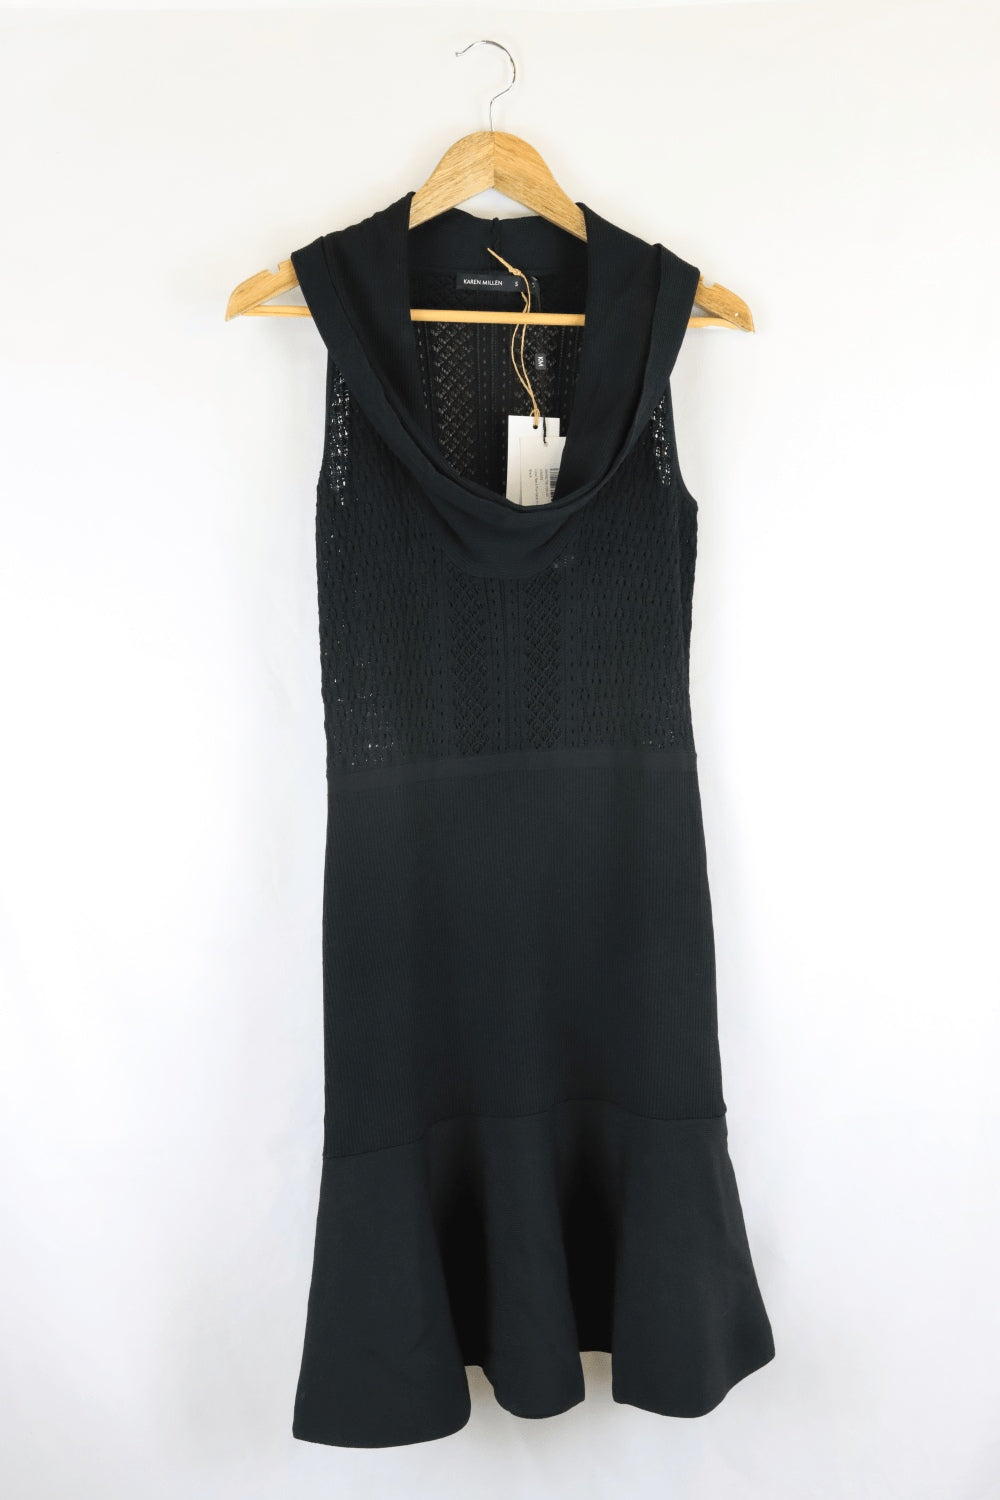 Karen Millen Black Dress S